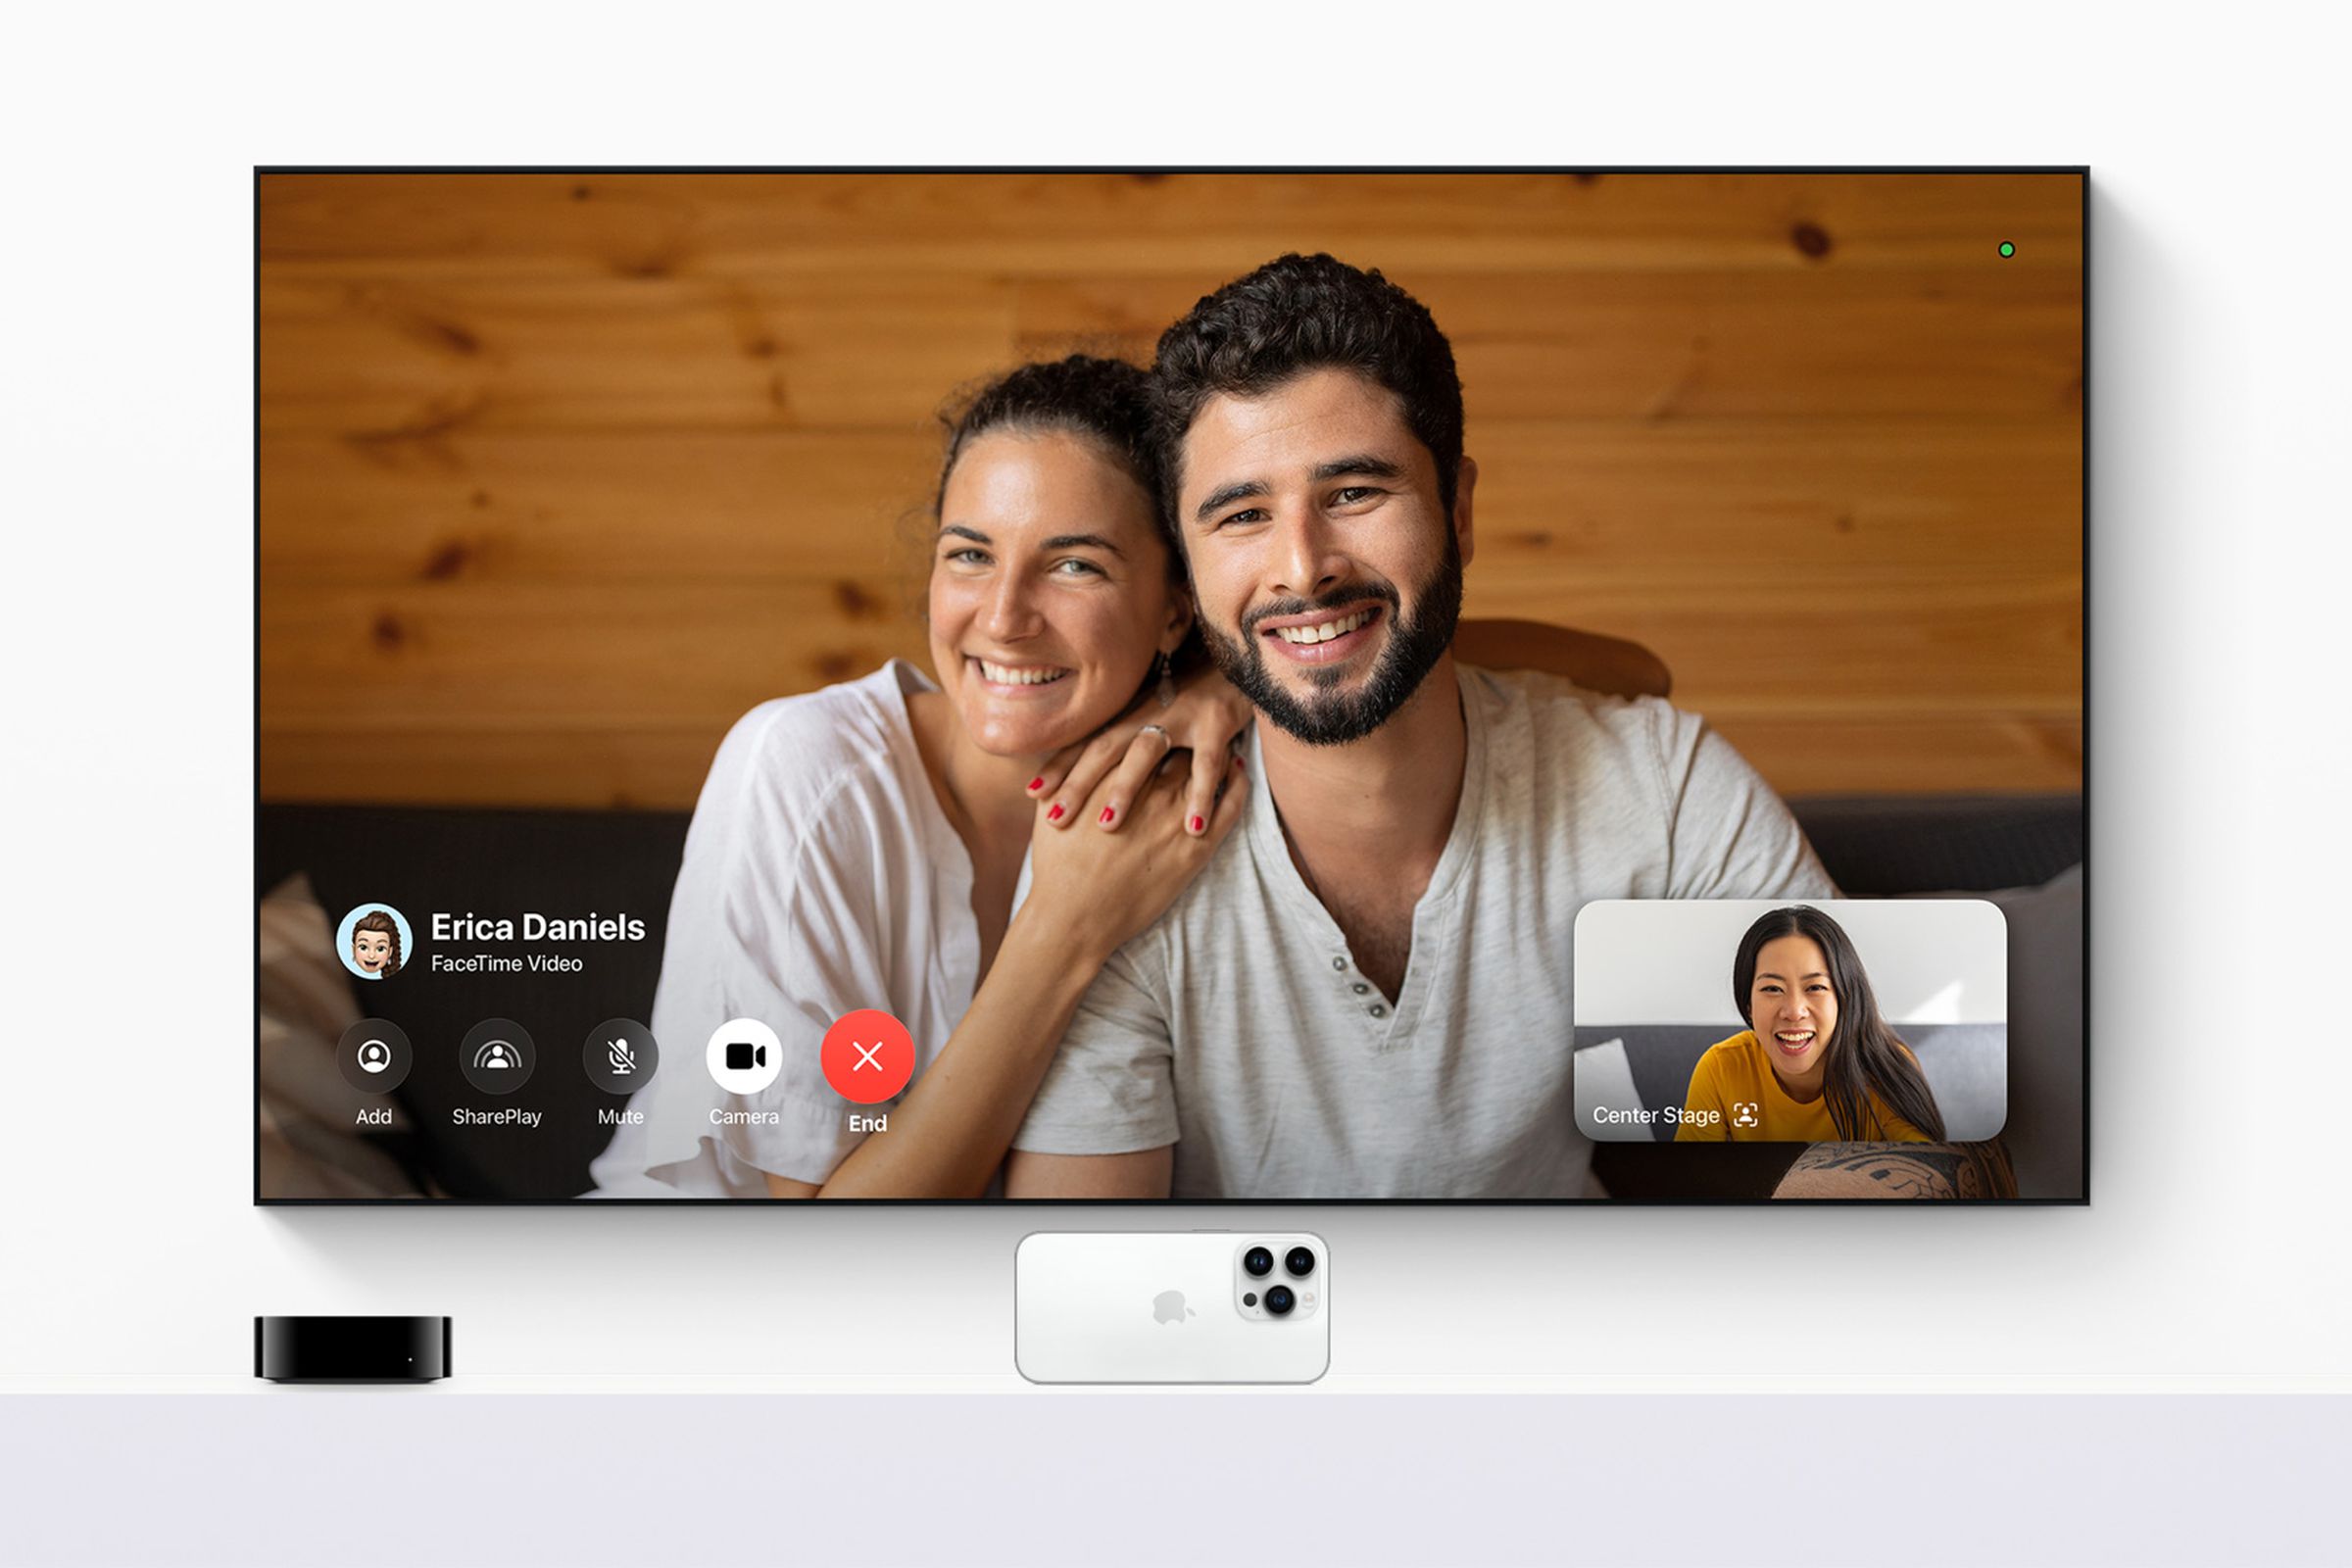 FaceTime on an Apple TV.